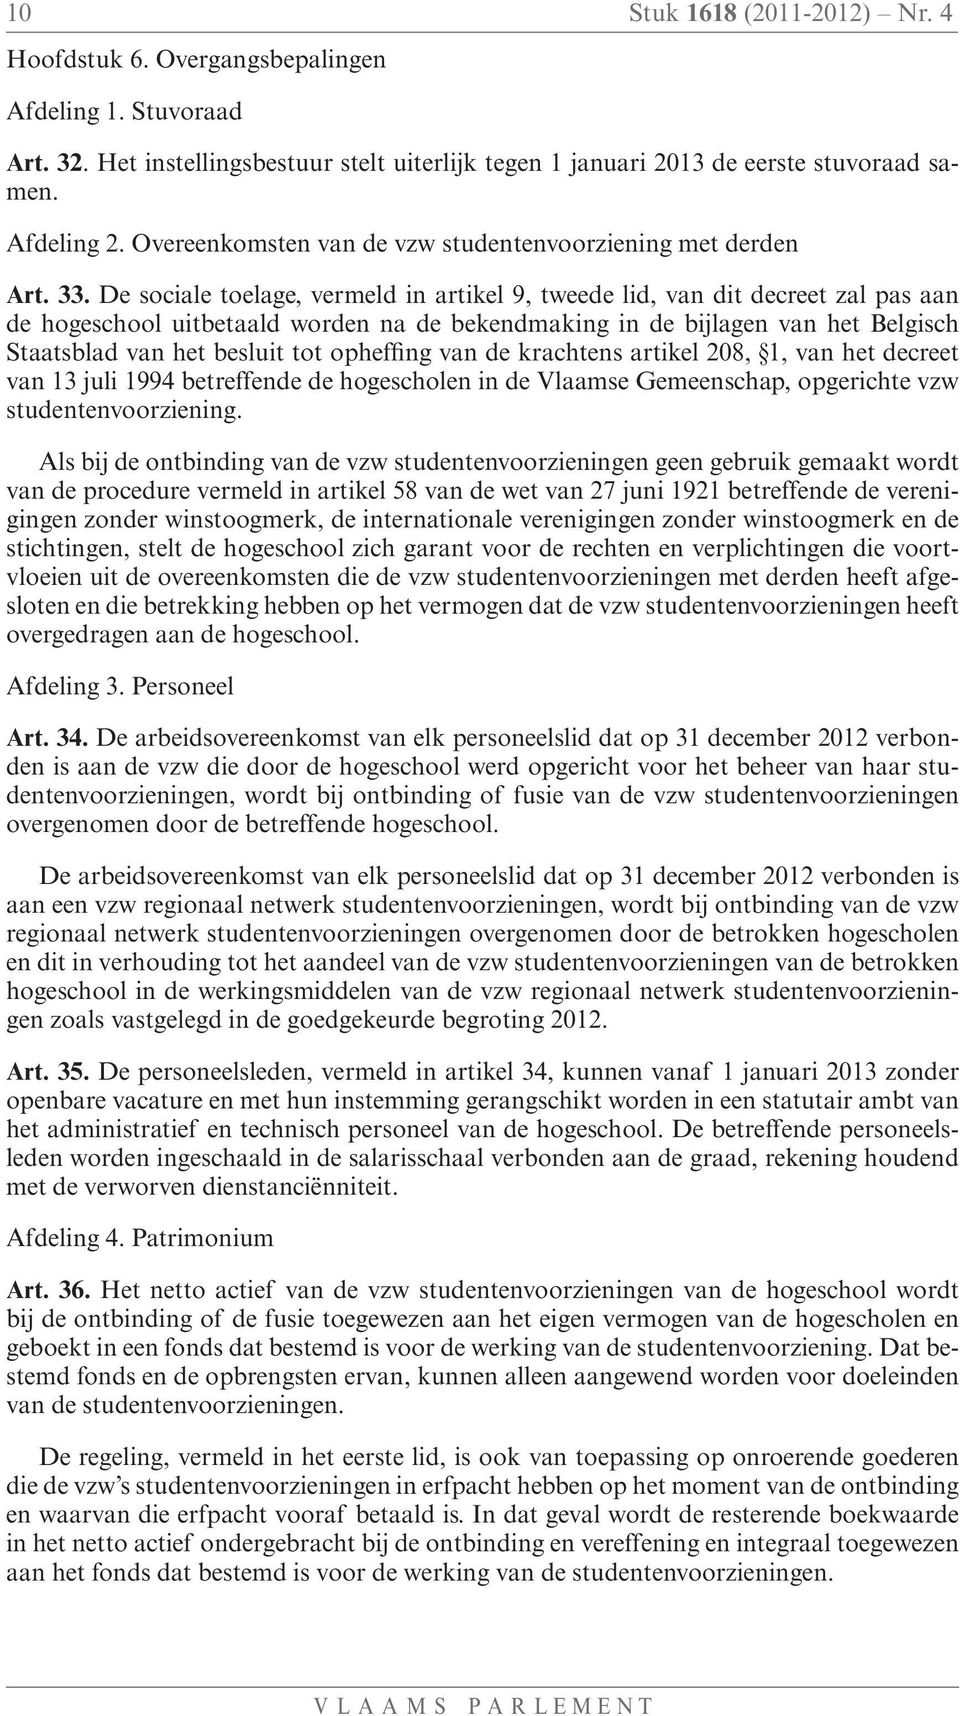 De sociale toelage, vermeld in artikel 9, tweede lid, van dit decreet zal pas aan de hogeschool uitbetaald worden na de bekendmaking in de bijlagen van het Belgisch Staatsblad van het besluit tot